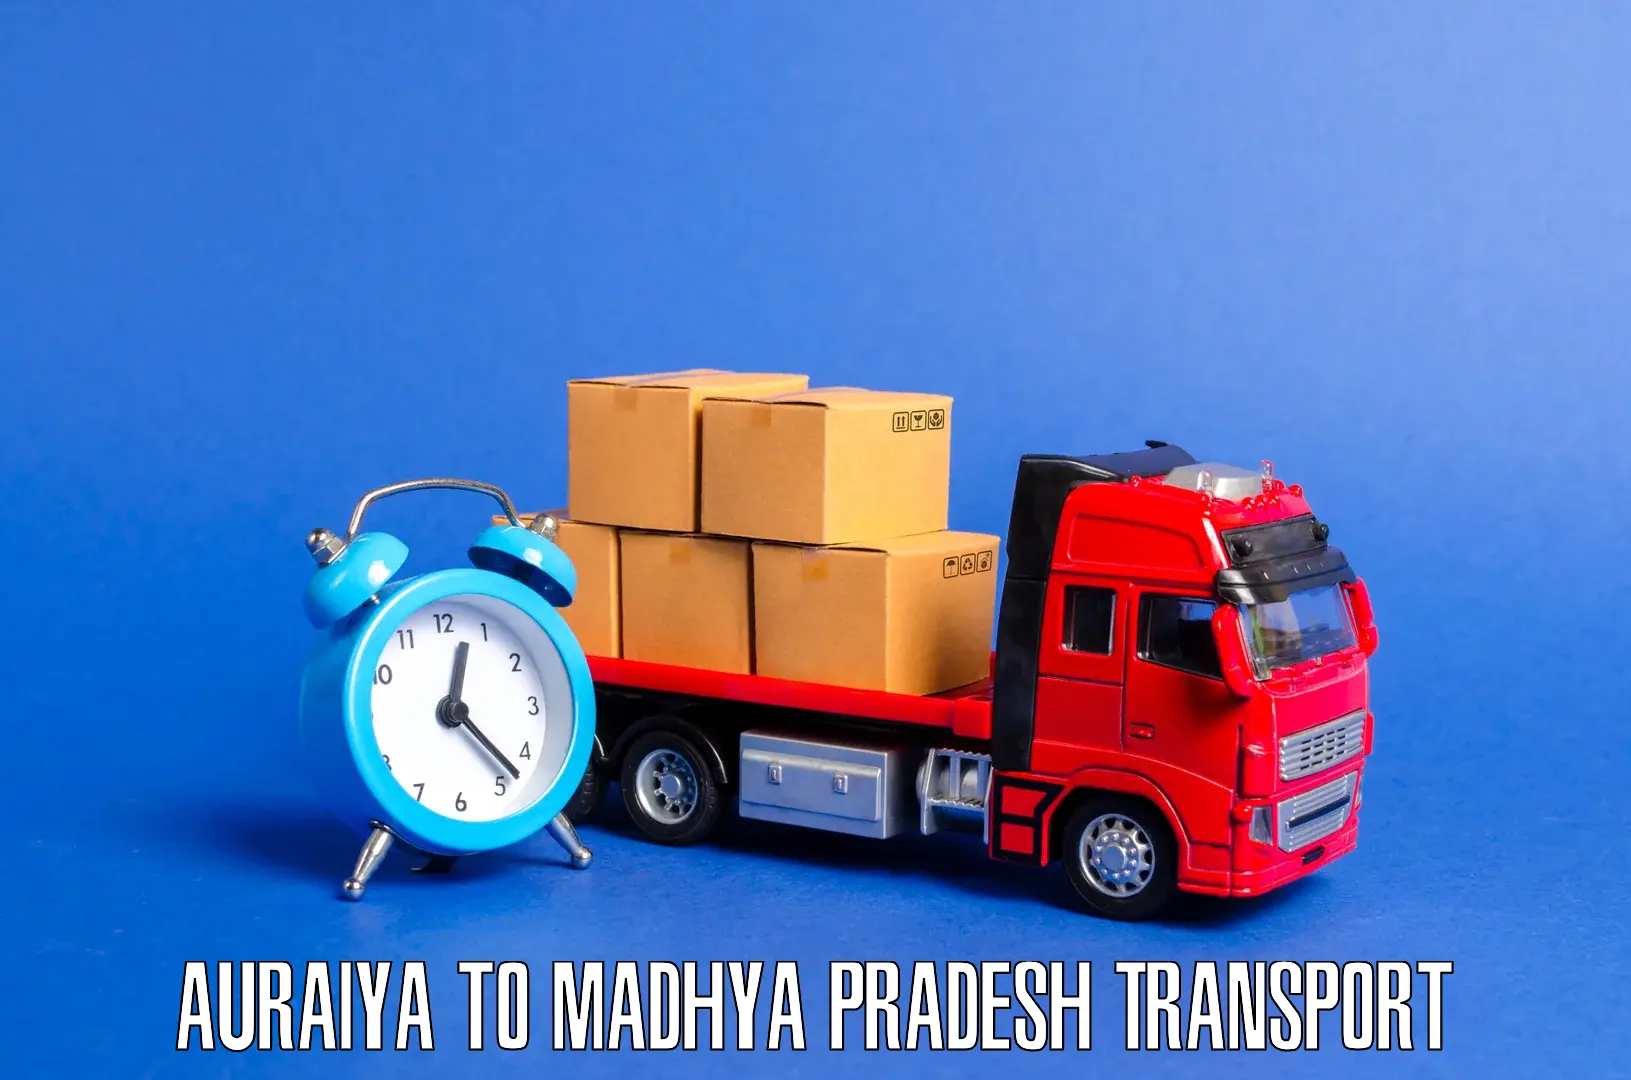 Daily parcel service transport Auraiya to Lashkar